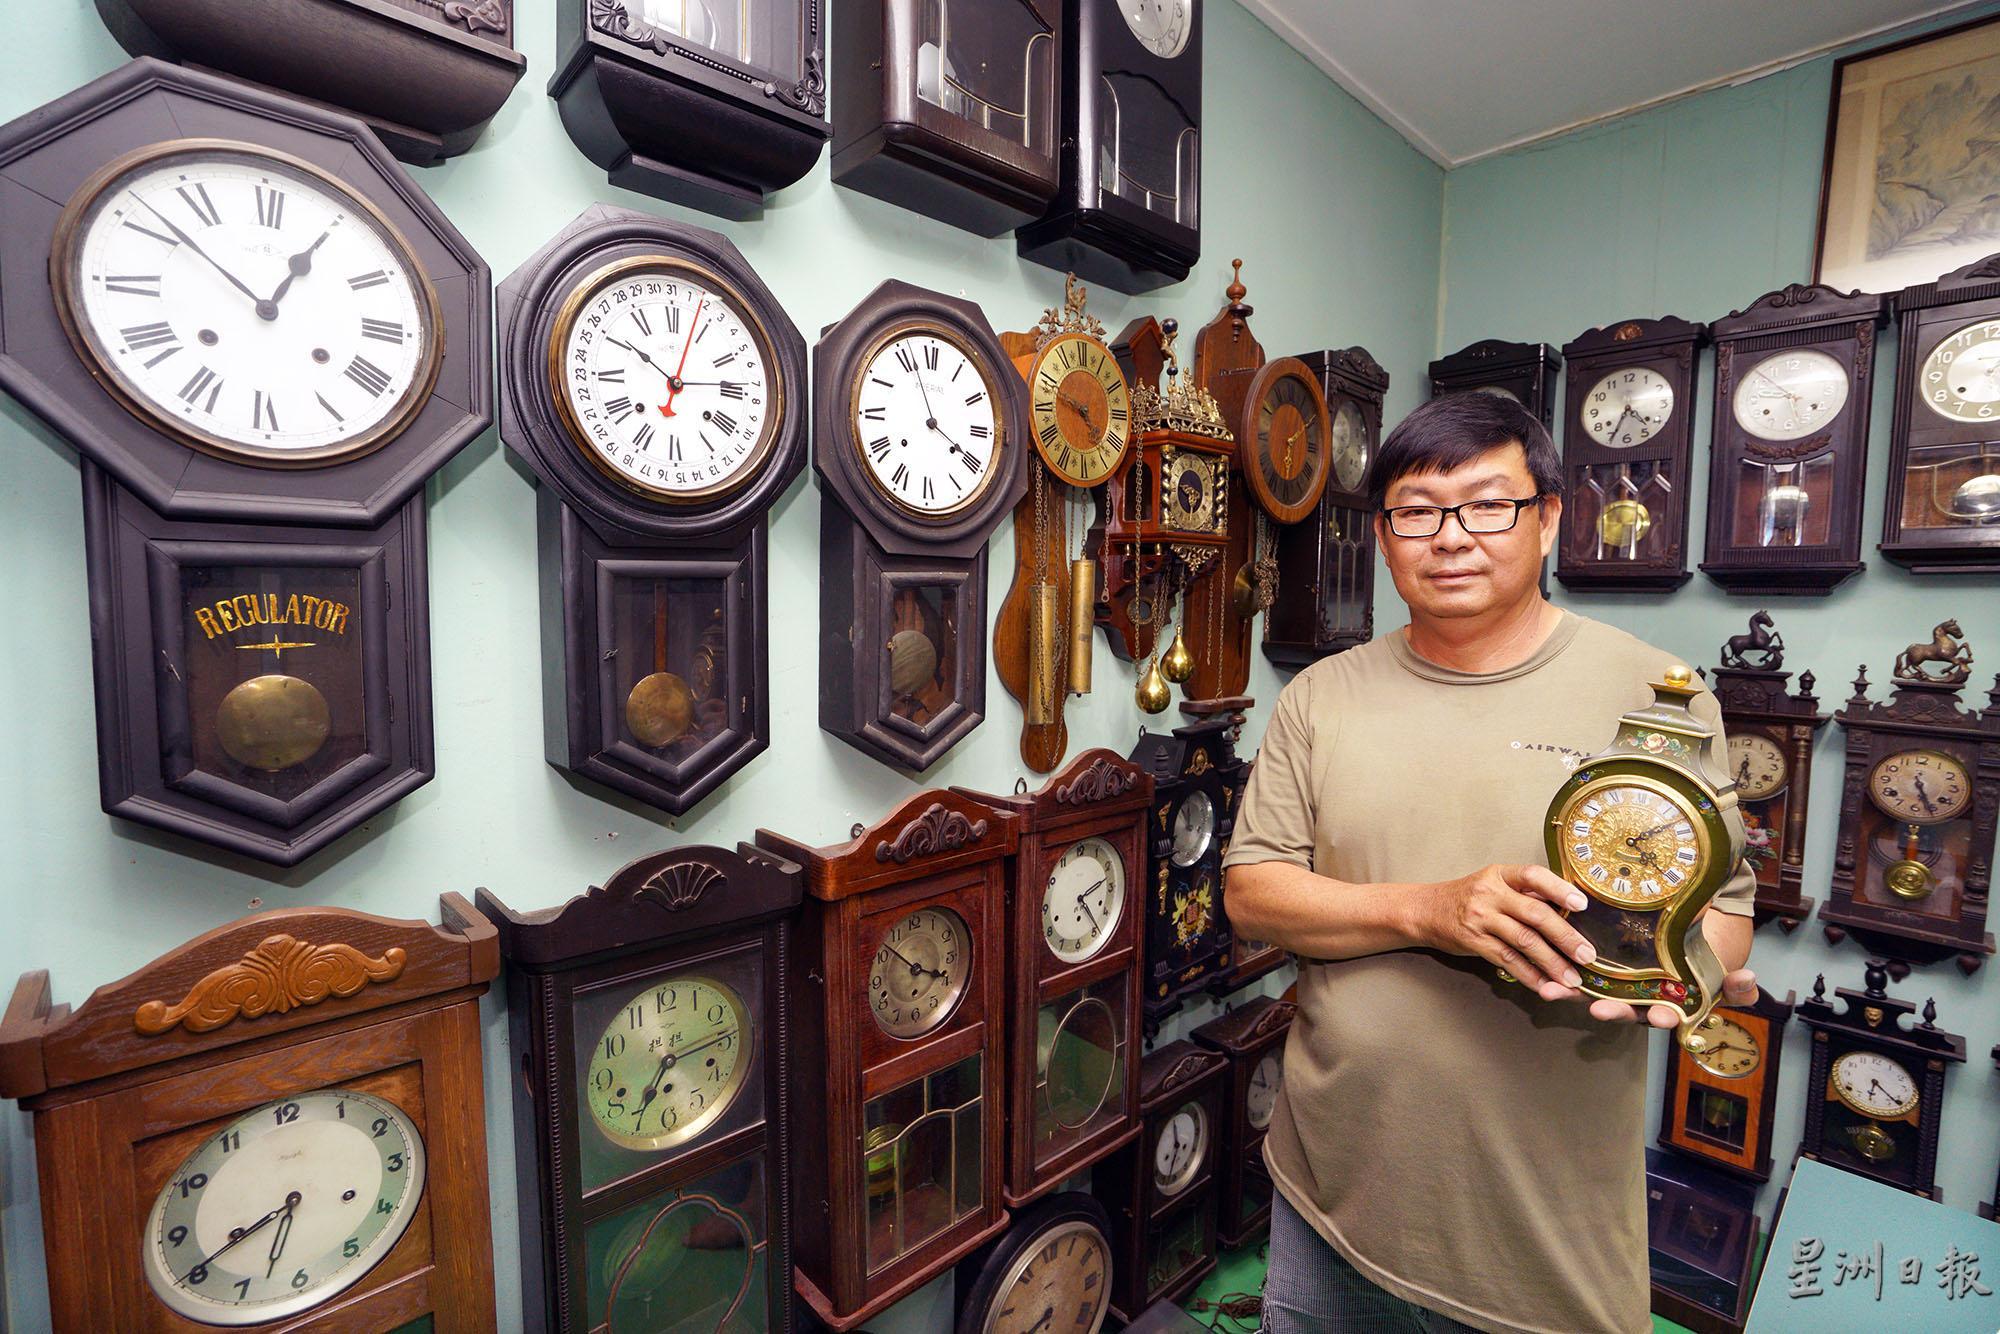 刘少强喜欢收藏古玩，对旧钟特别情有独钟，至少收藏了大约120个旧式的钟，手持著来自德国的电金床头钟。

